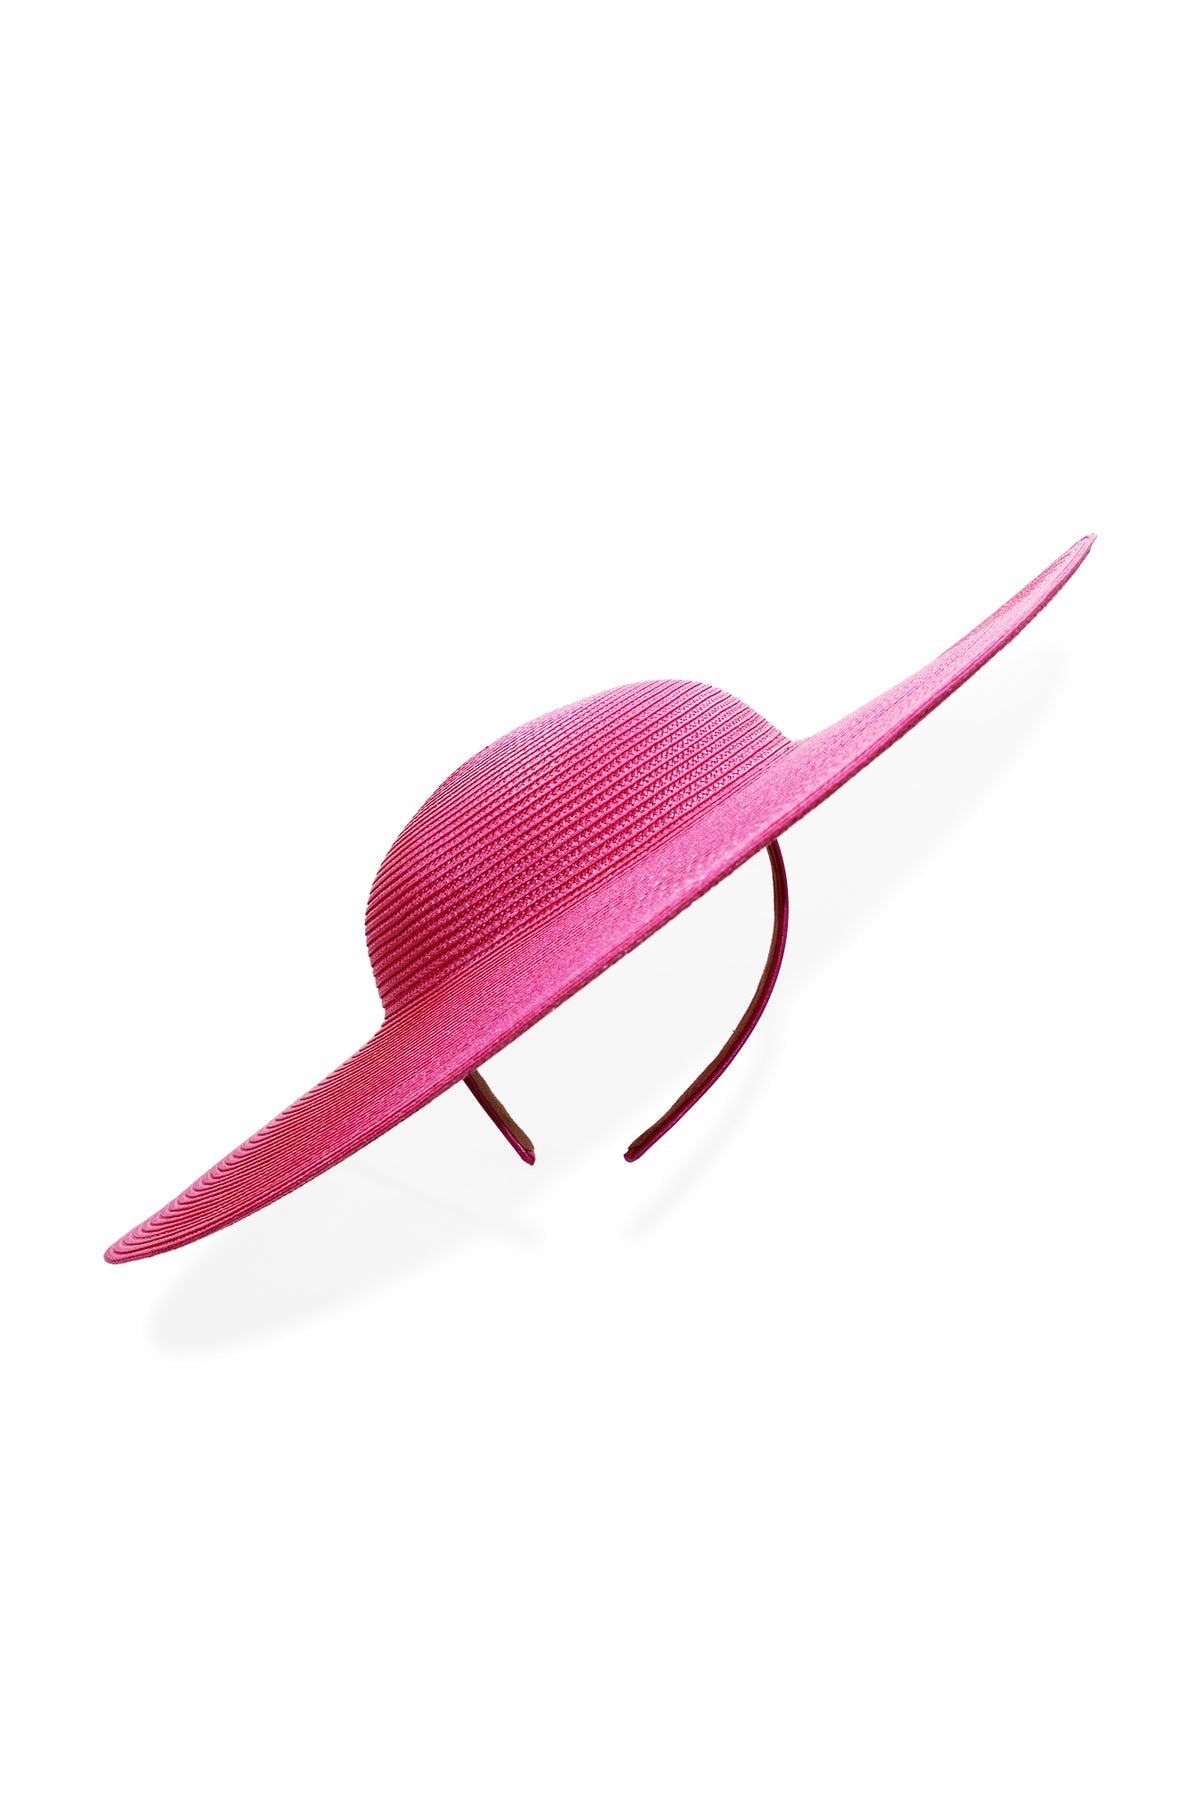 Morgan & Taylor Mona Plate Hat - Hot Pink